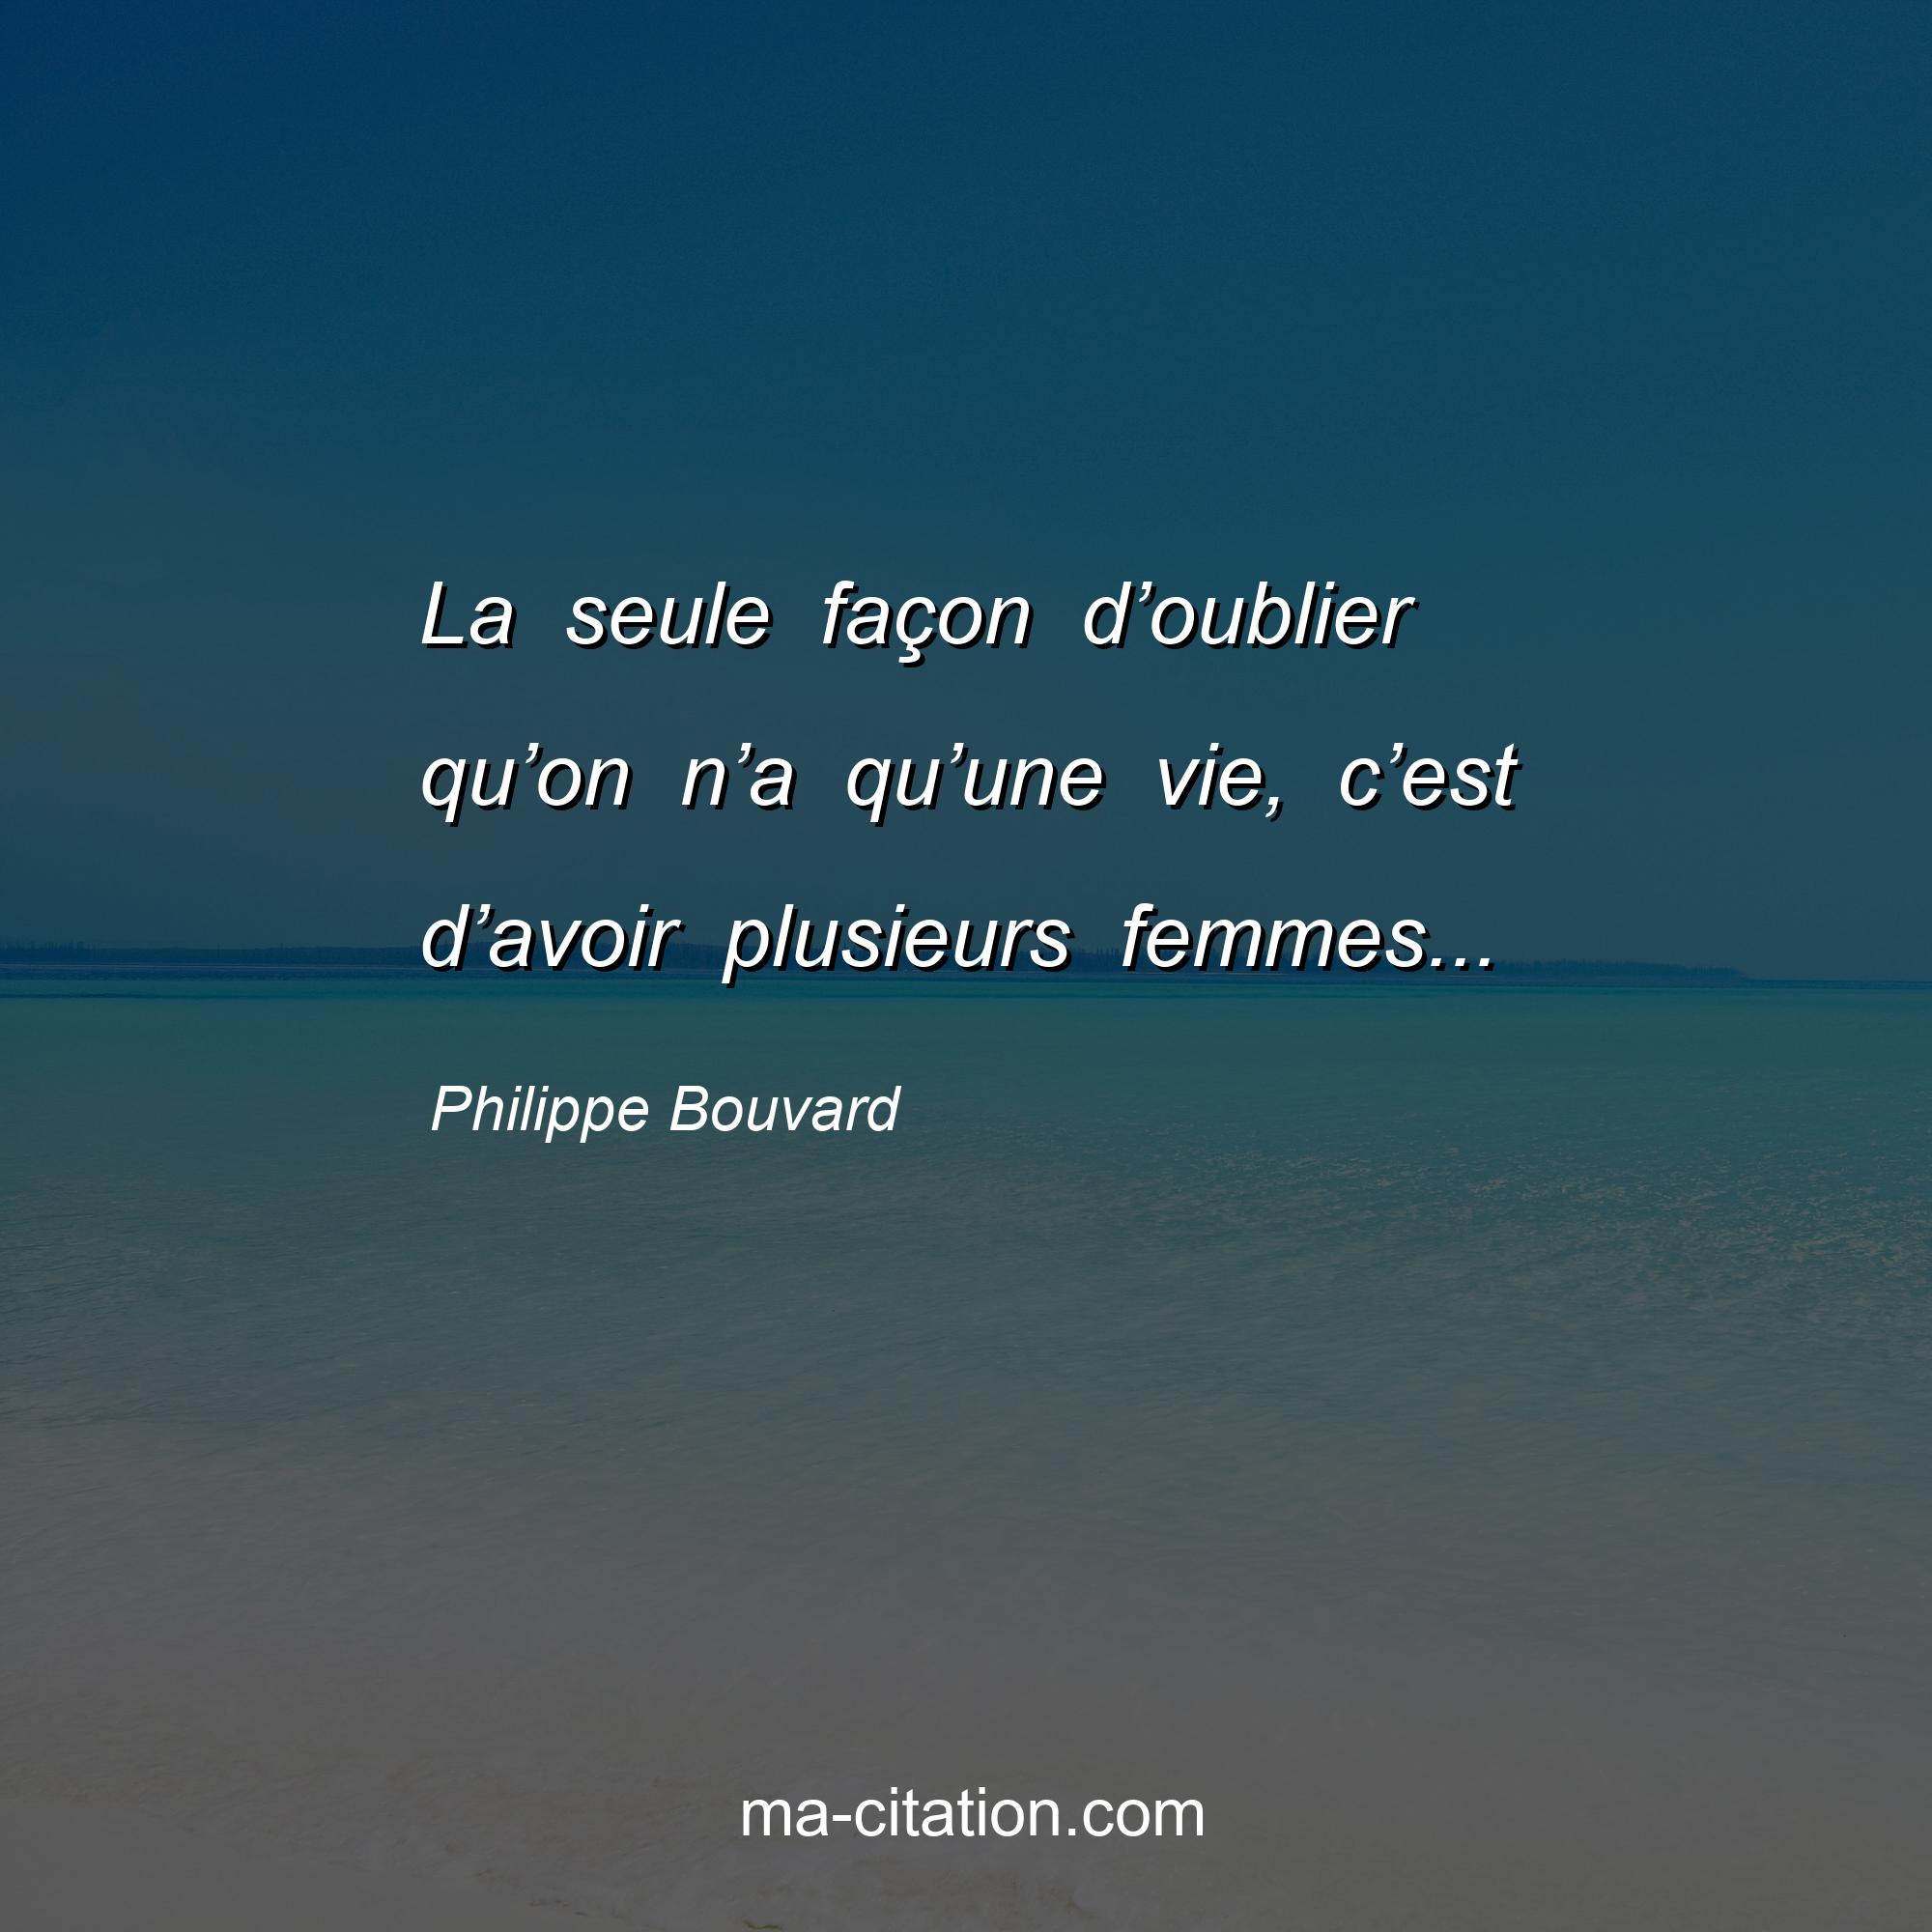 Philippe Bouvard : La seule façon d’oublier qu’on n’a qu’une vie, c’est d’avoir plusieurs femmes...